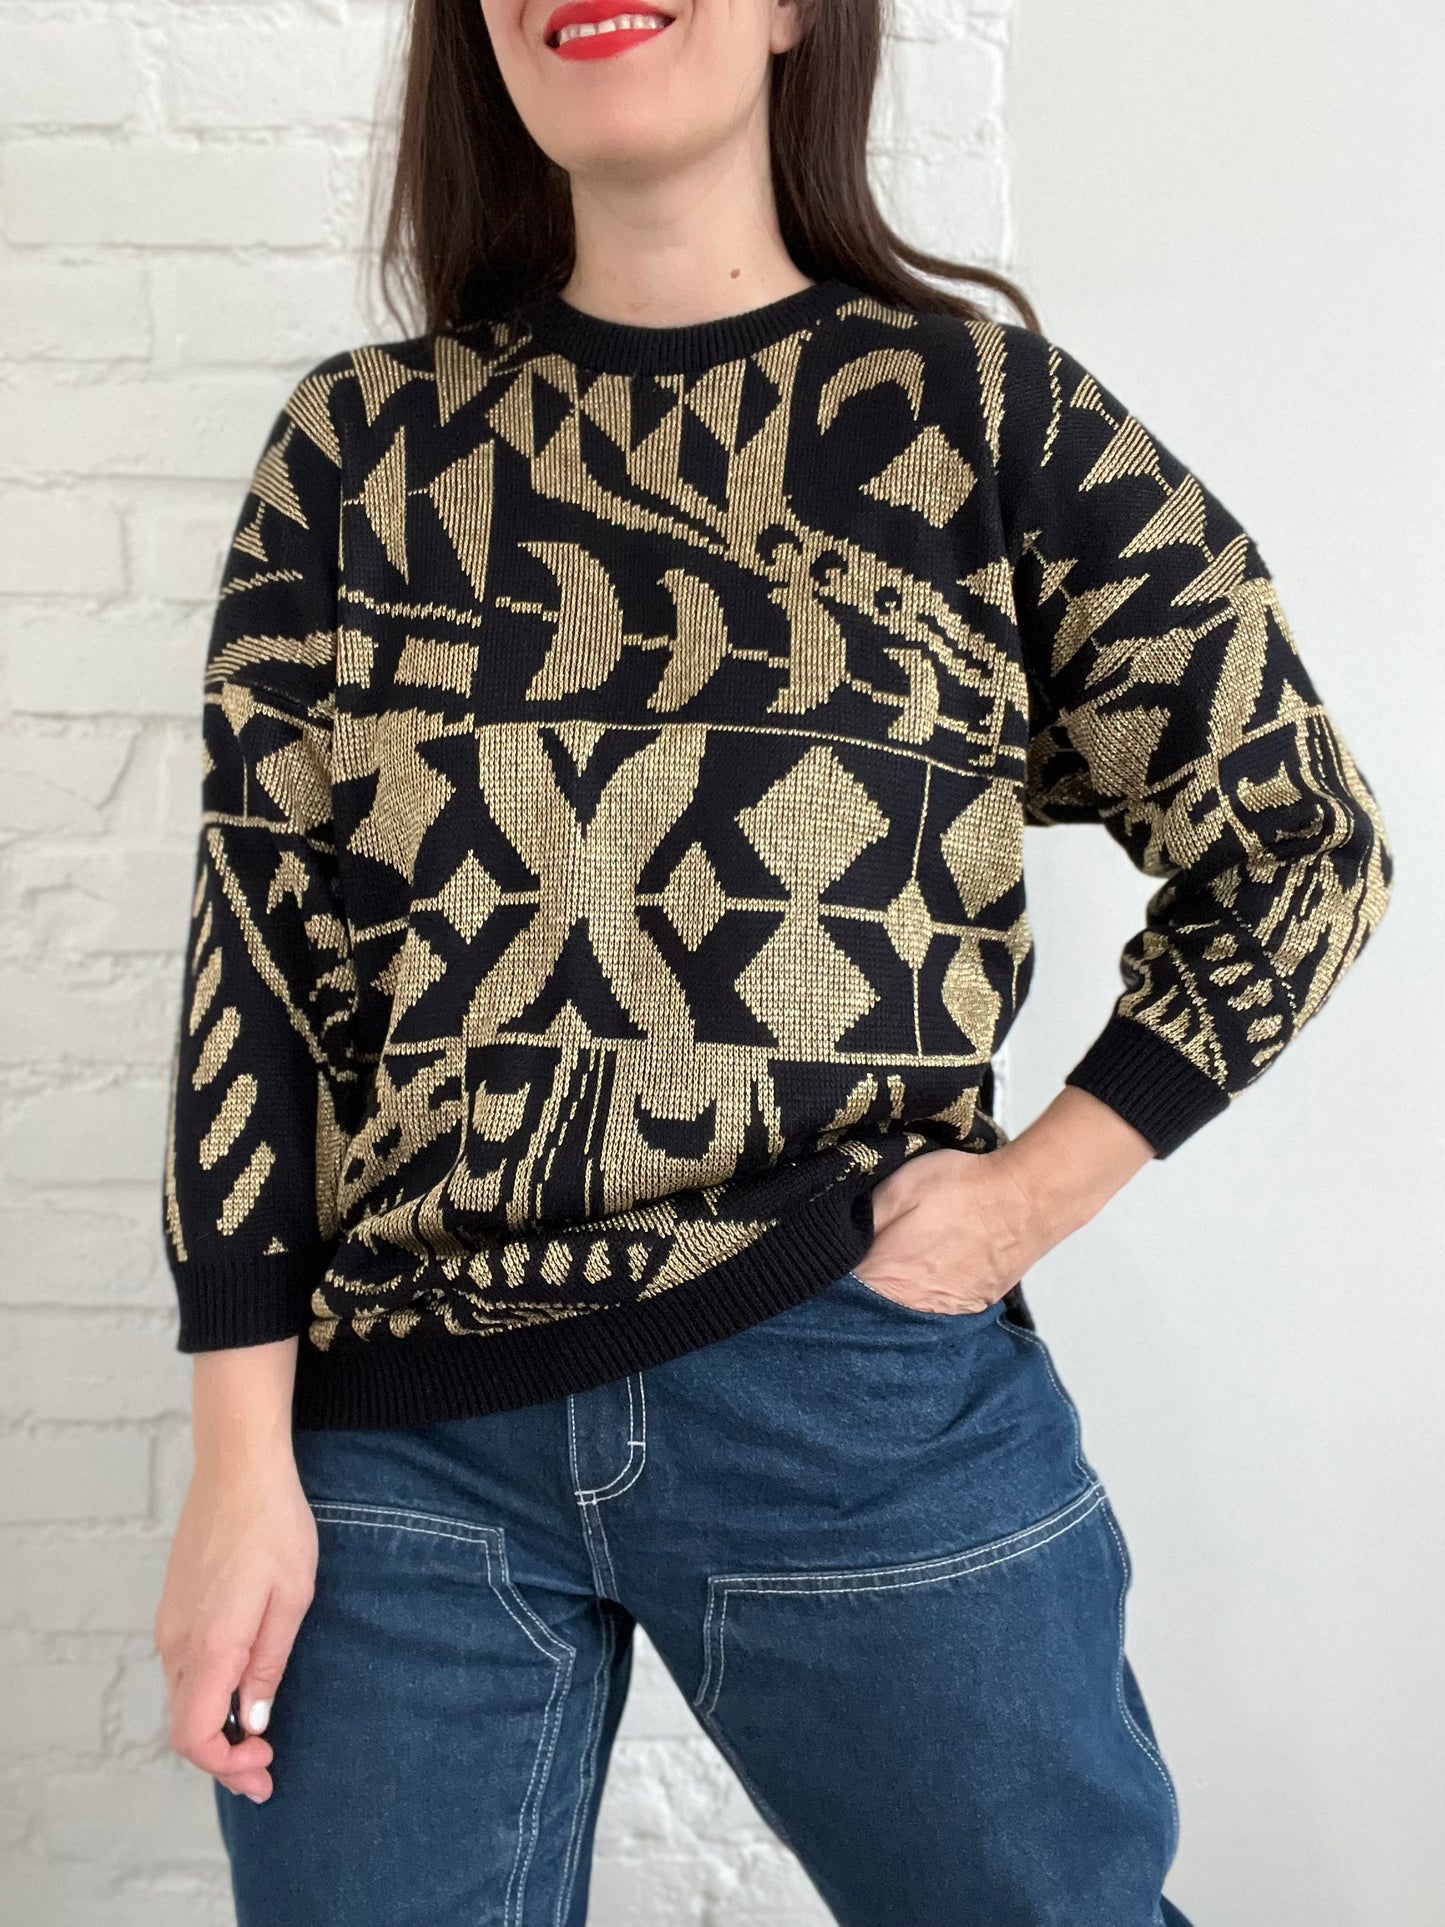 Metallic Moon Knit Sweater - M/L